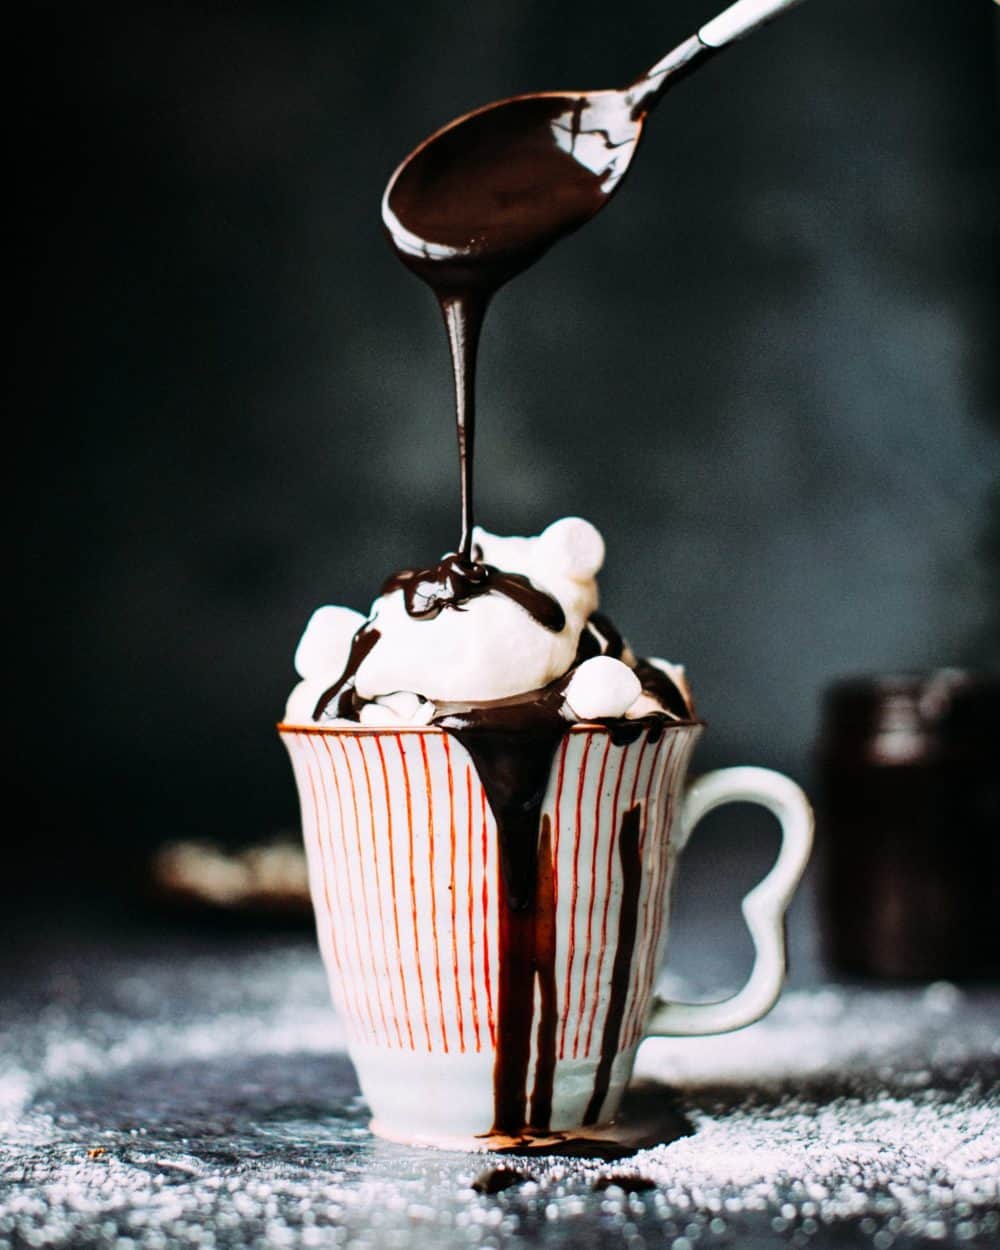 image-dining-season-coffee-chocolate